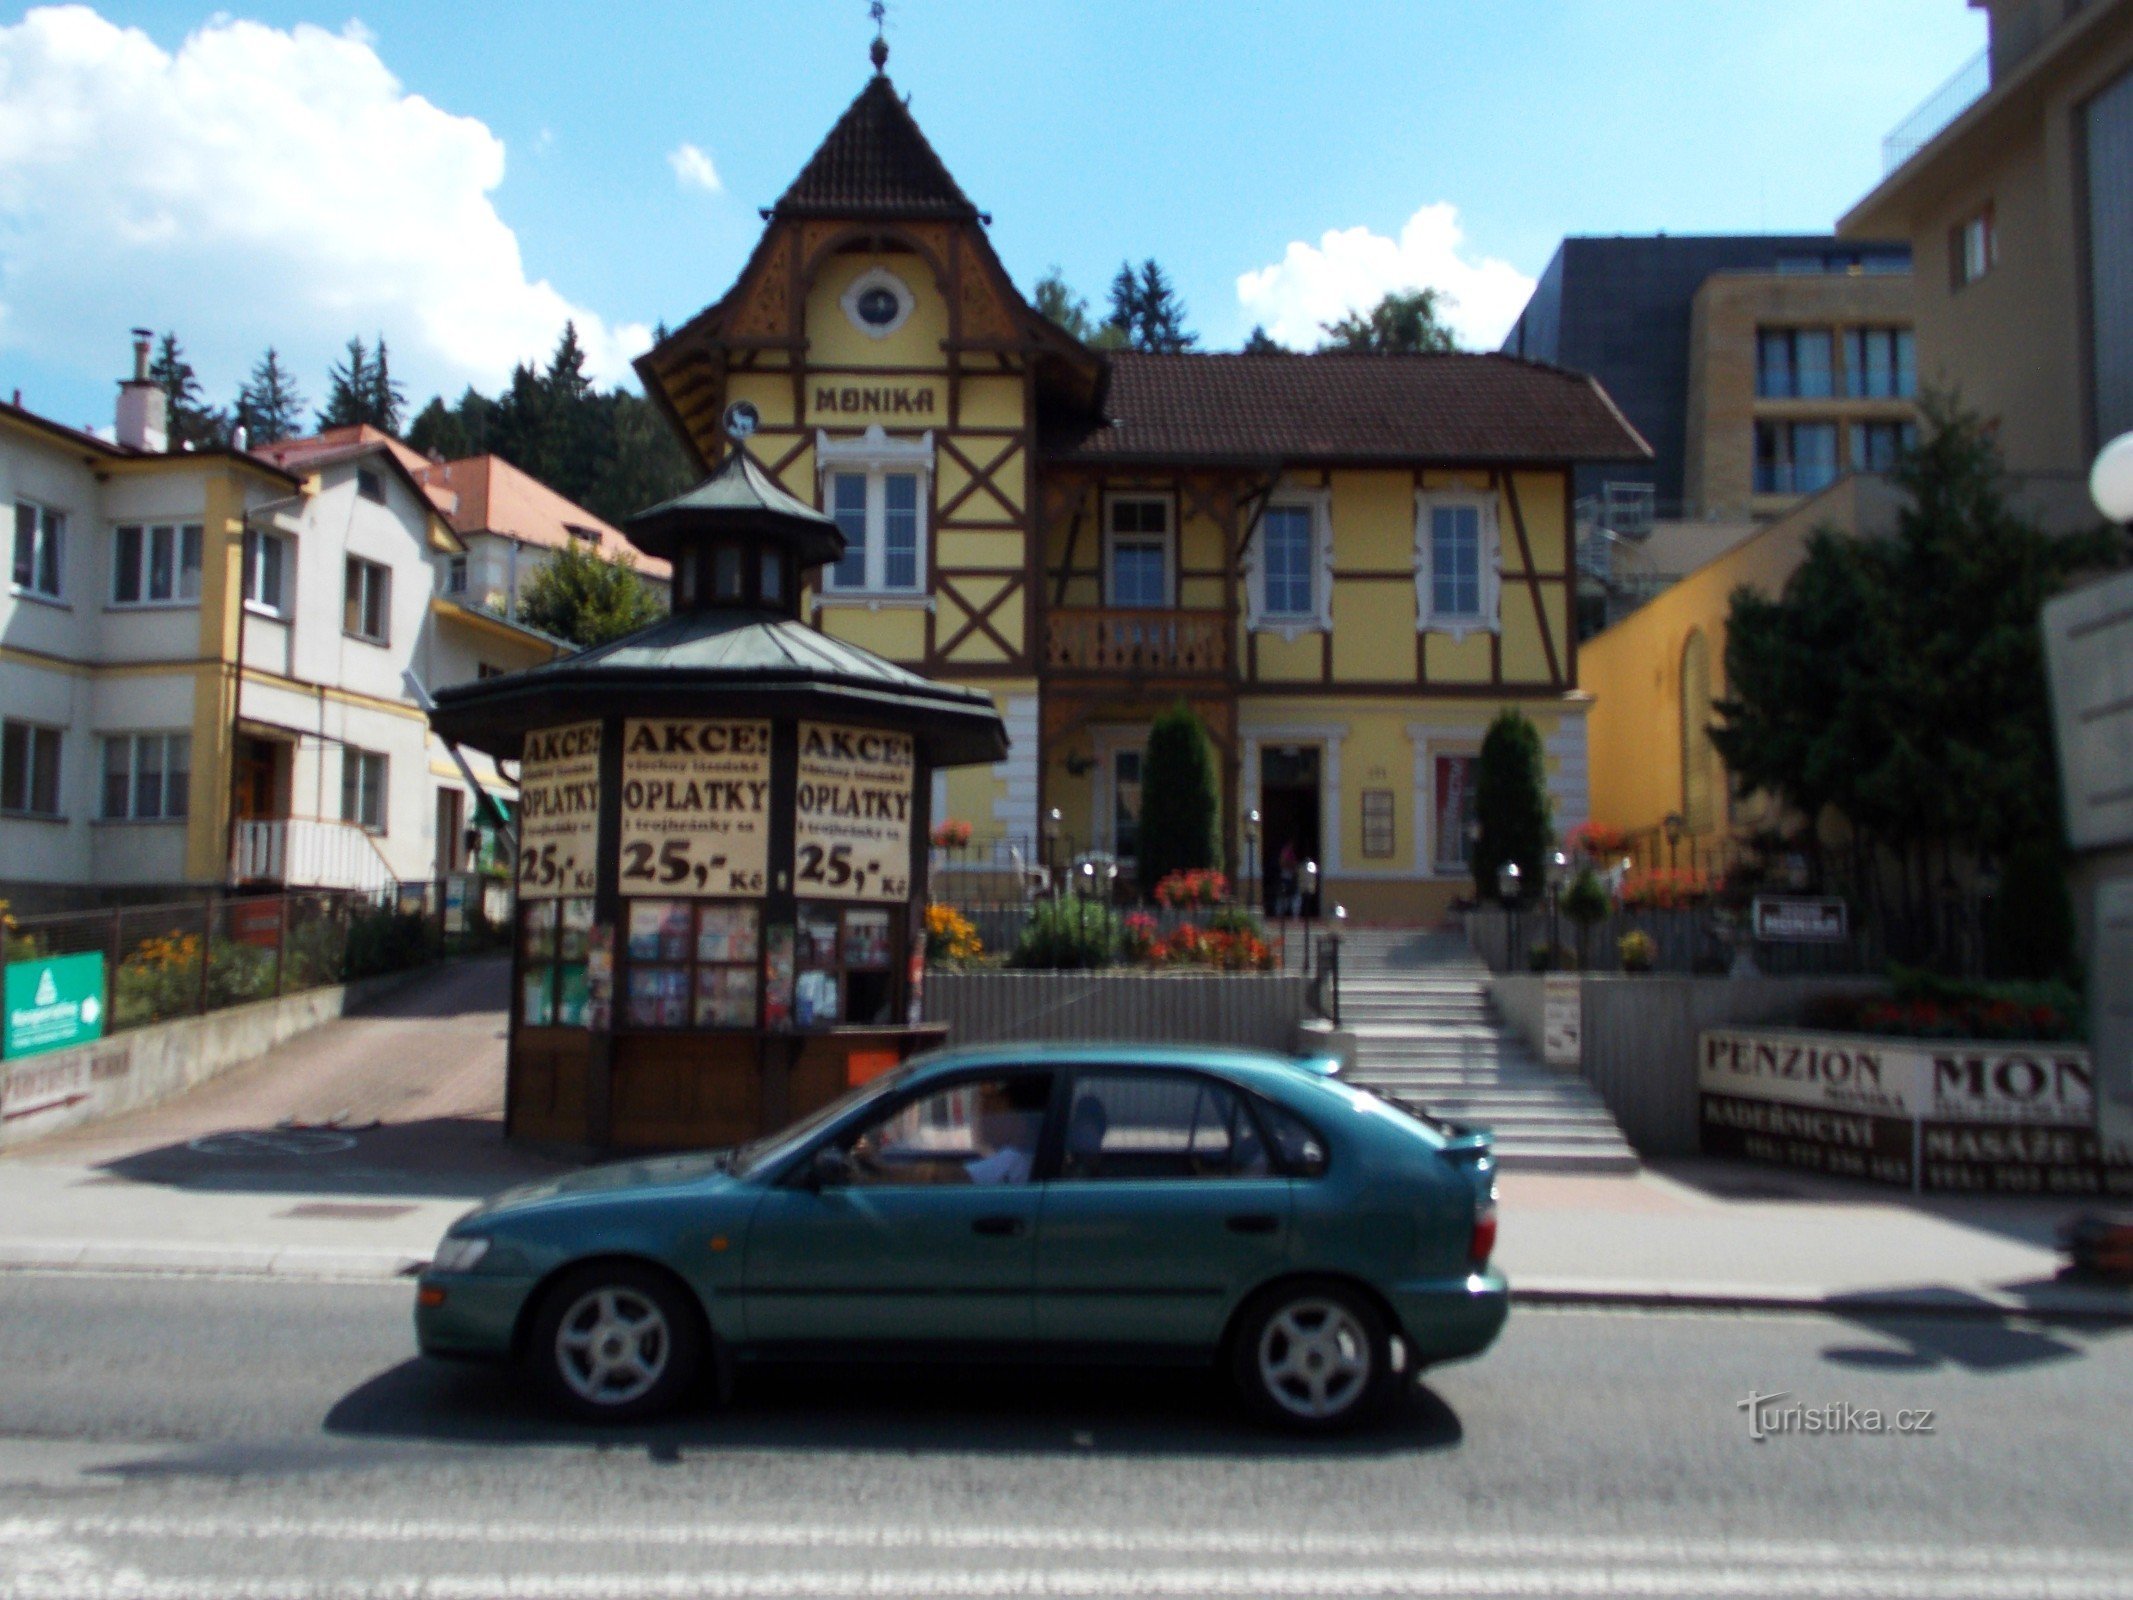 Đến nhà khách Monika ở Luhačovice